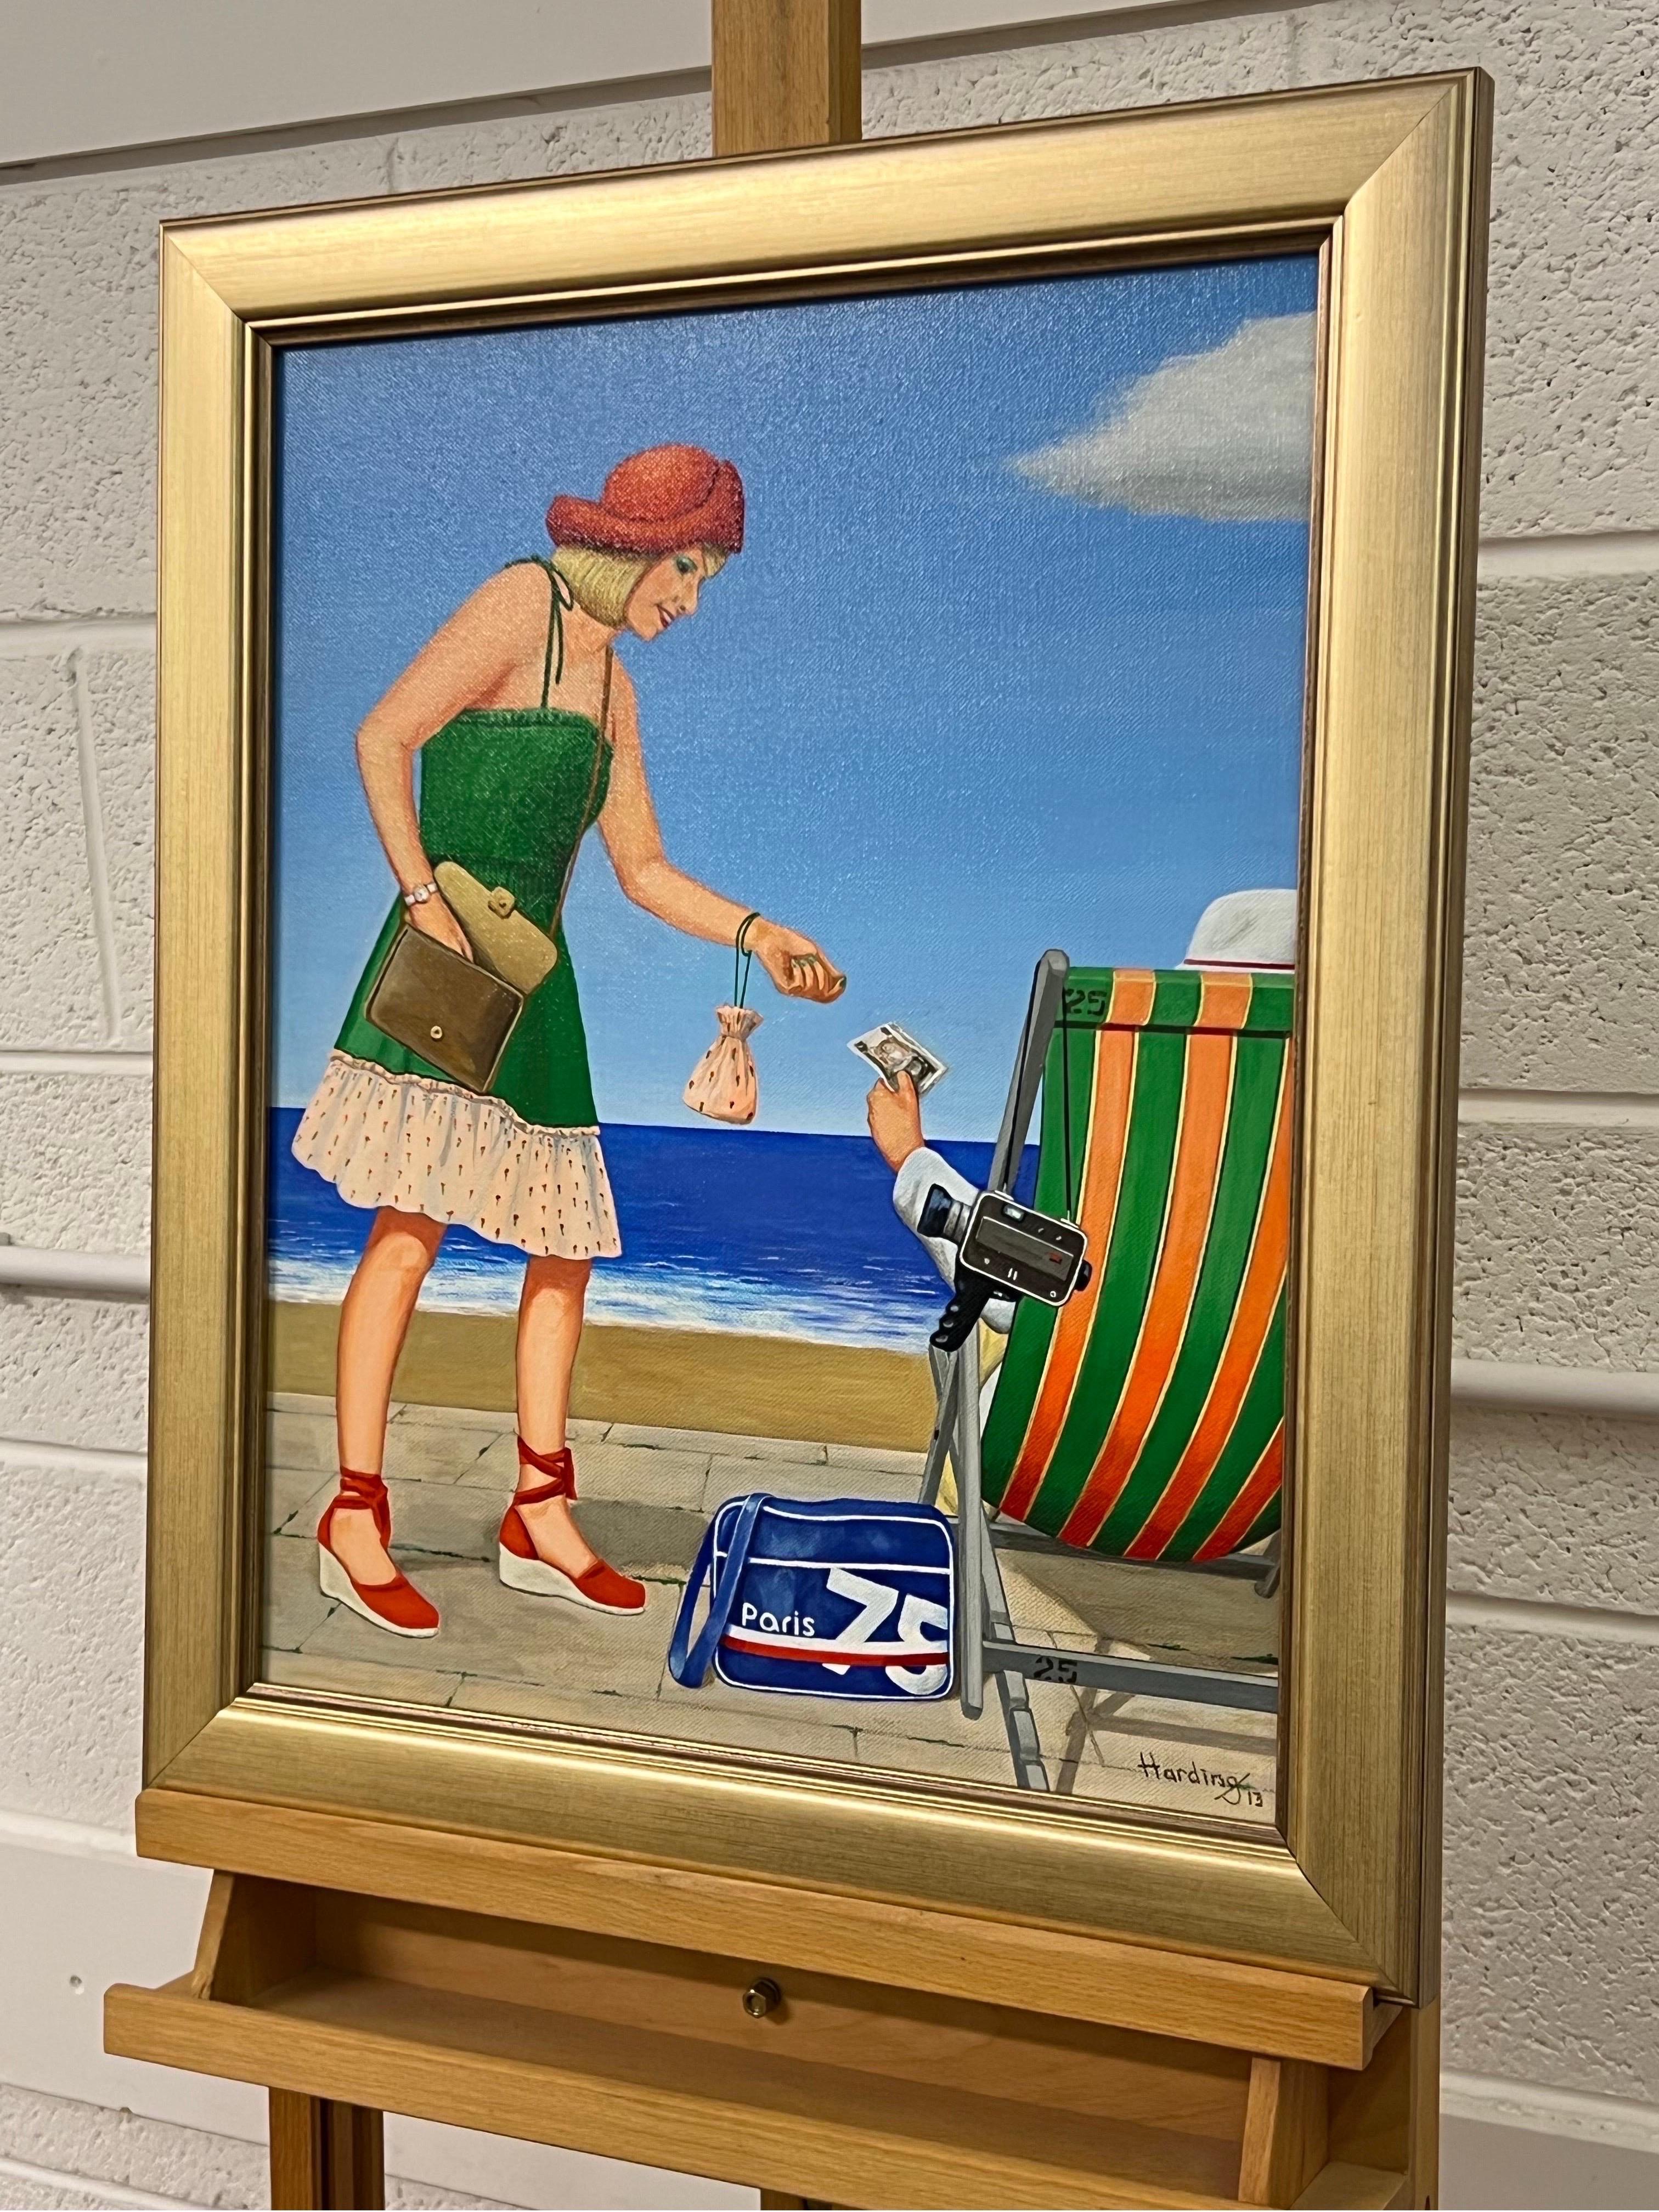 Vintage English Woman at a Seaside Beach Resort in Summer 1960's 1970's England mit dem Titel 'Summer Collection 1' von Retro Nostalgic Artist, Paul F Harding. Signiert, Original, Öl auf Leinwand. Präsentiert in einem goldenen Rahmen.

Kunst misst